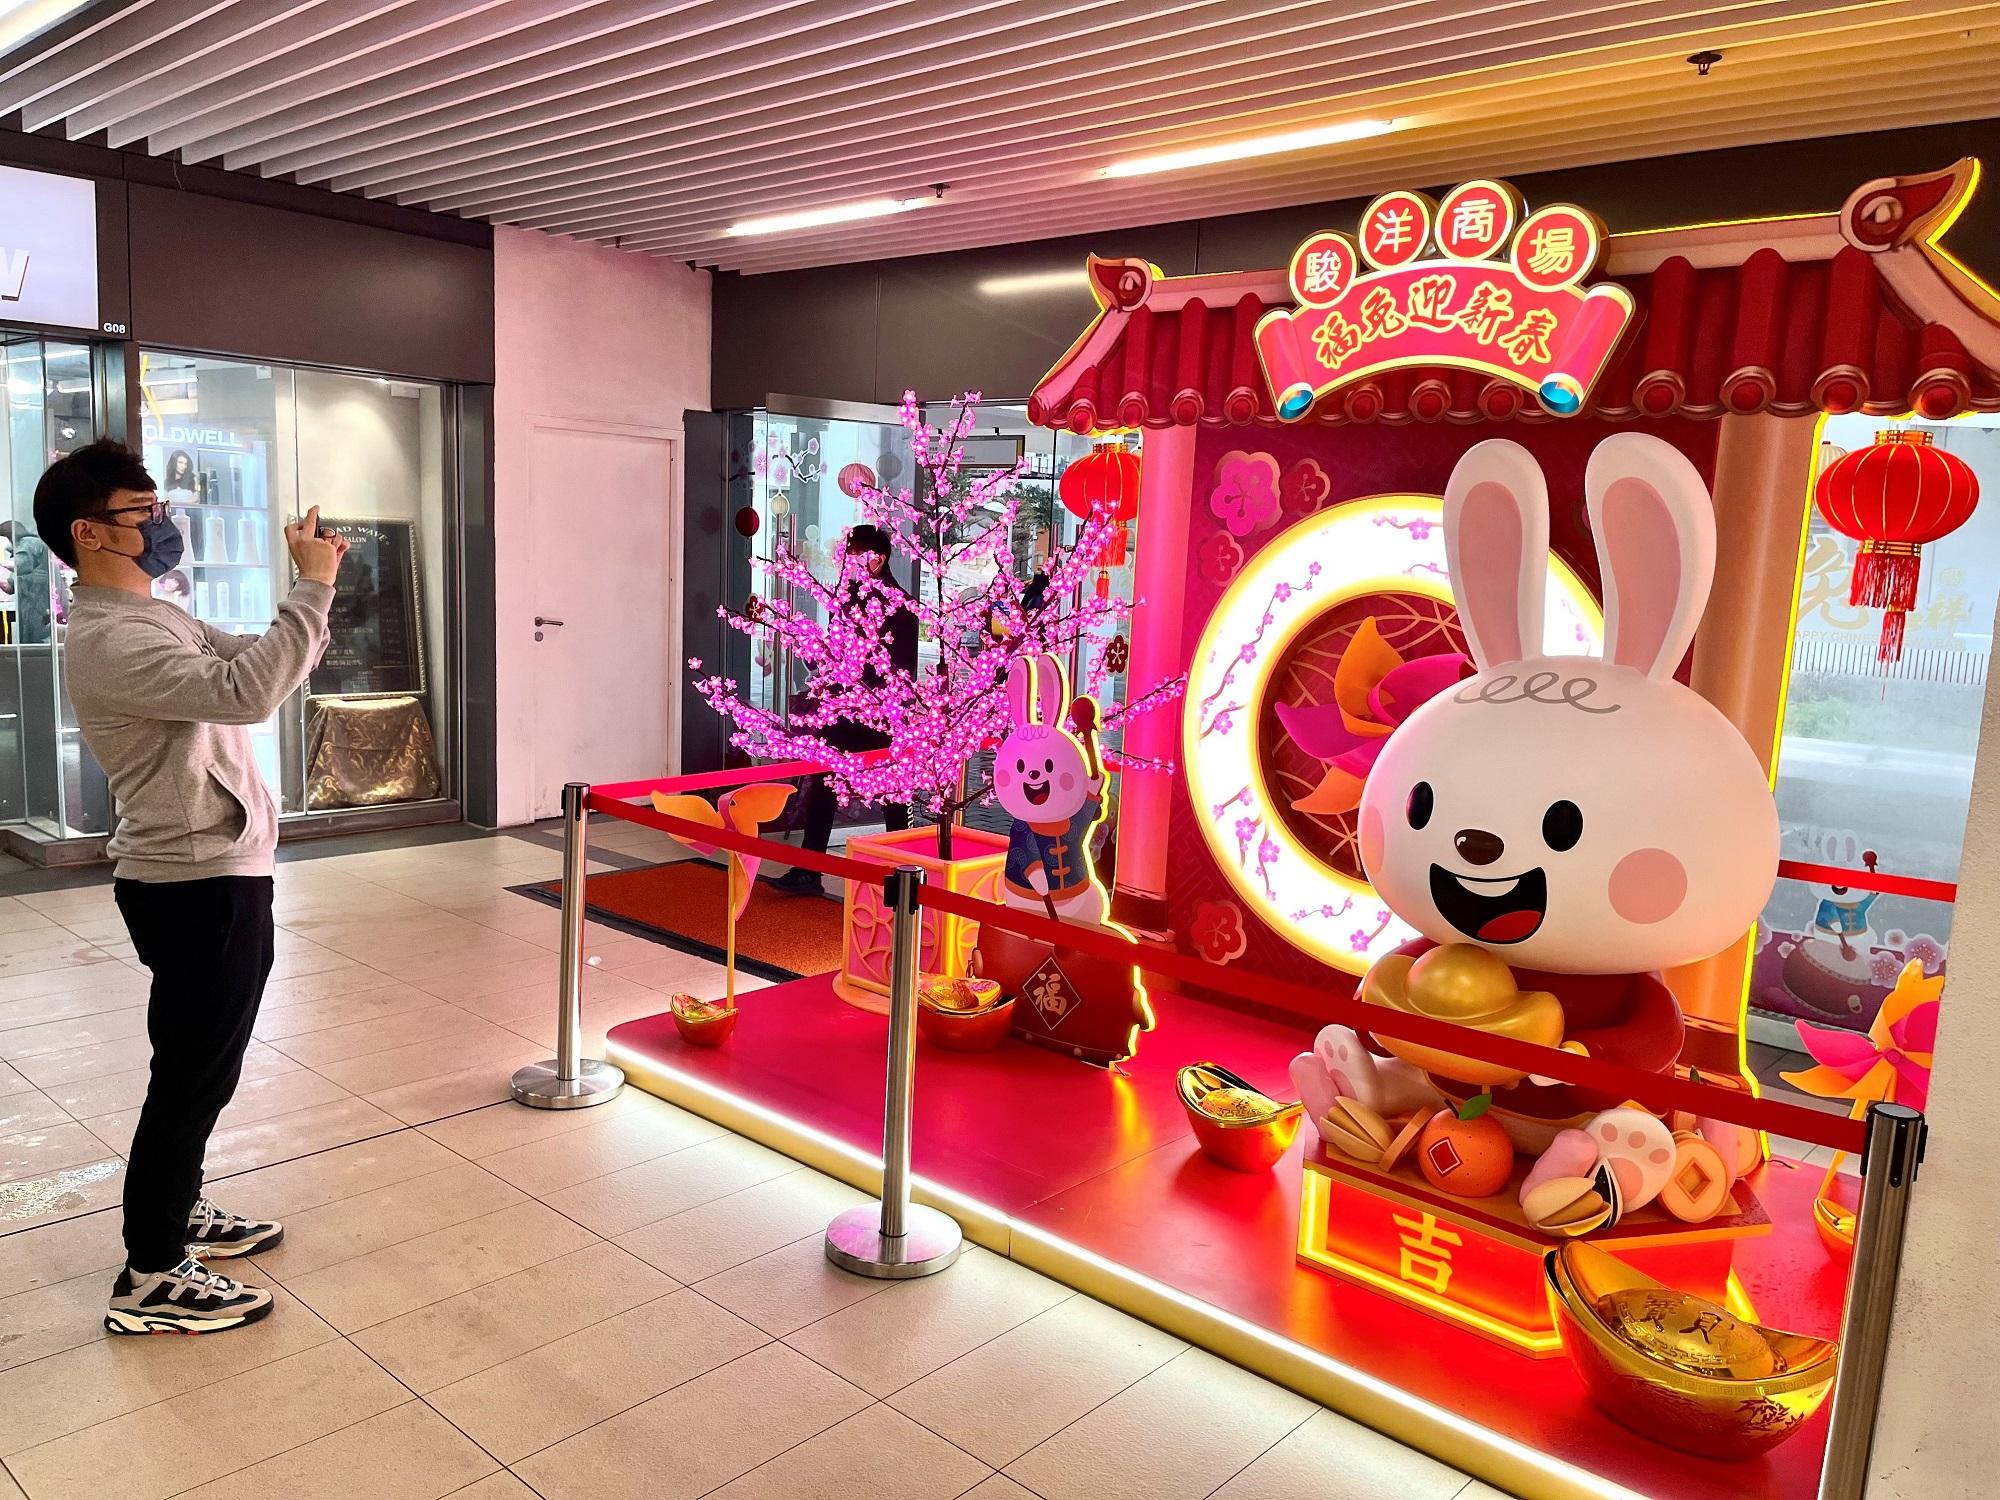 香港房屋委员会辖下沙田骏洋商场的新年布置，为巿民和顾客带来新年好意头，亦让大家拍照「打卡」。